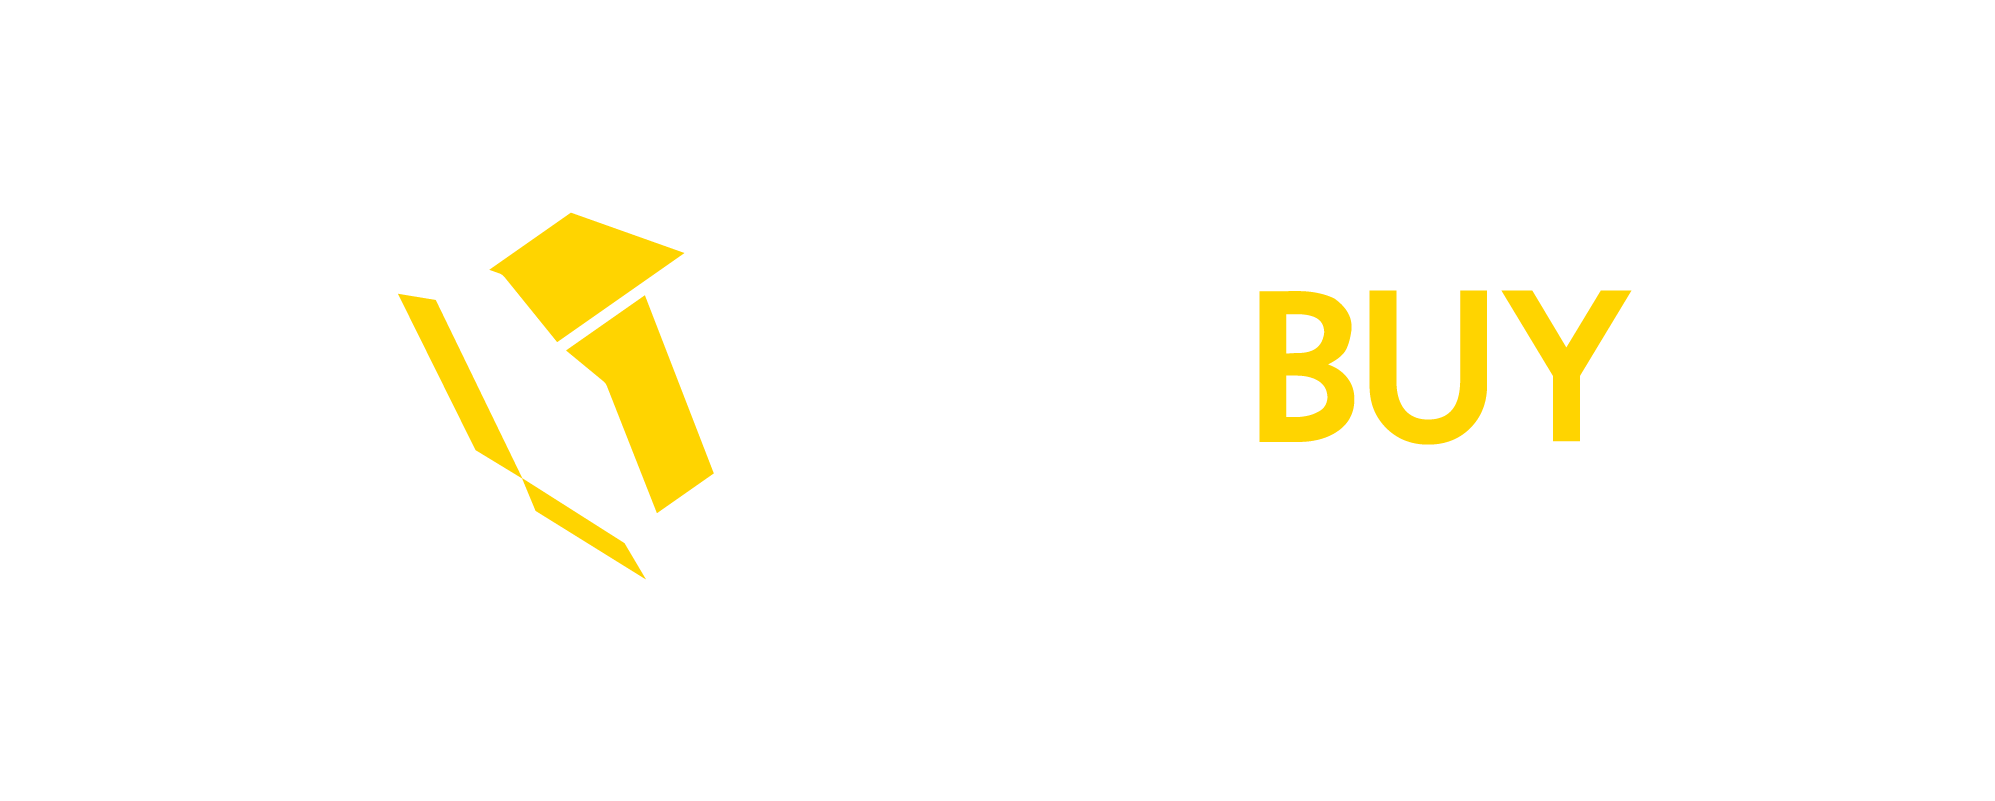 West Buy